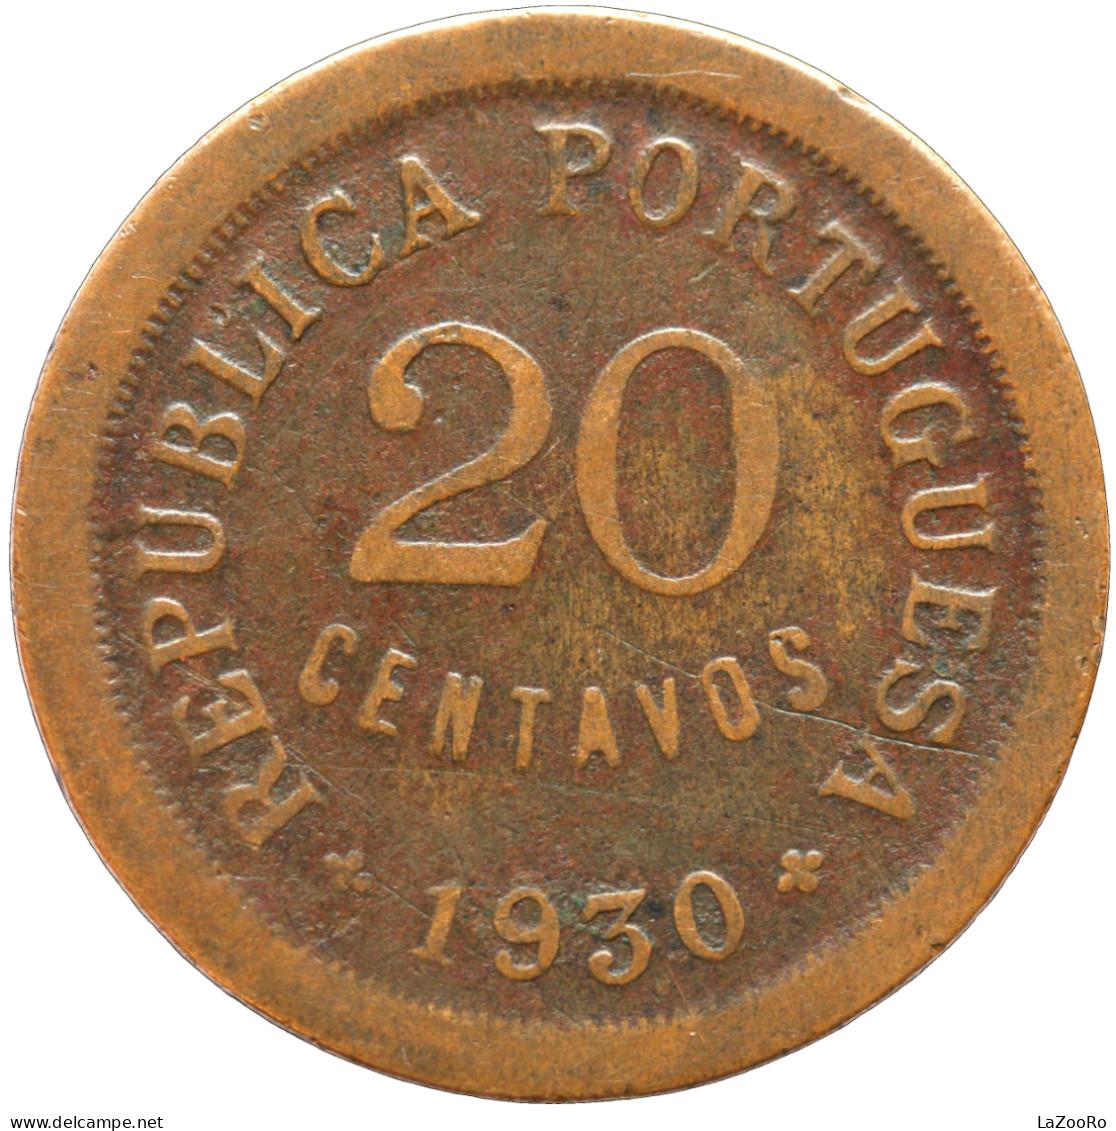 LaZooRo: Portuguese Cape Verde 20 Centavos 1930 VF - Cap Vert